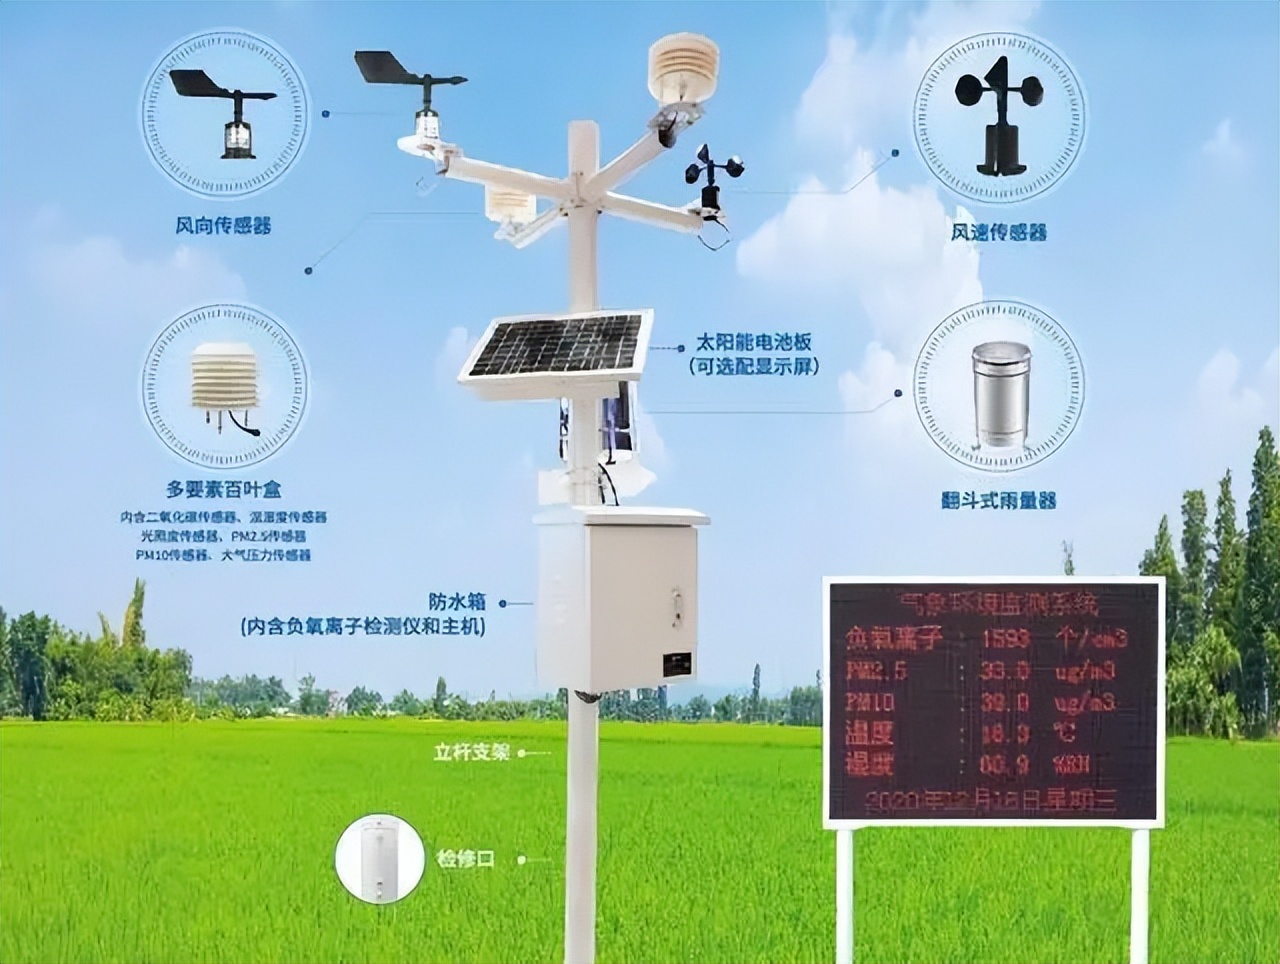 农业气象环境监测系统